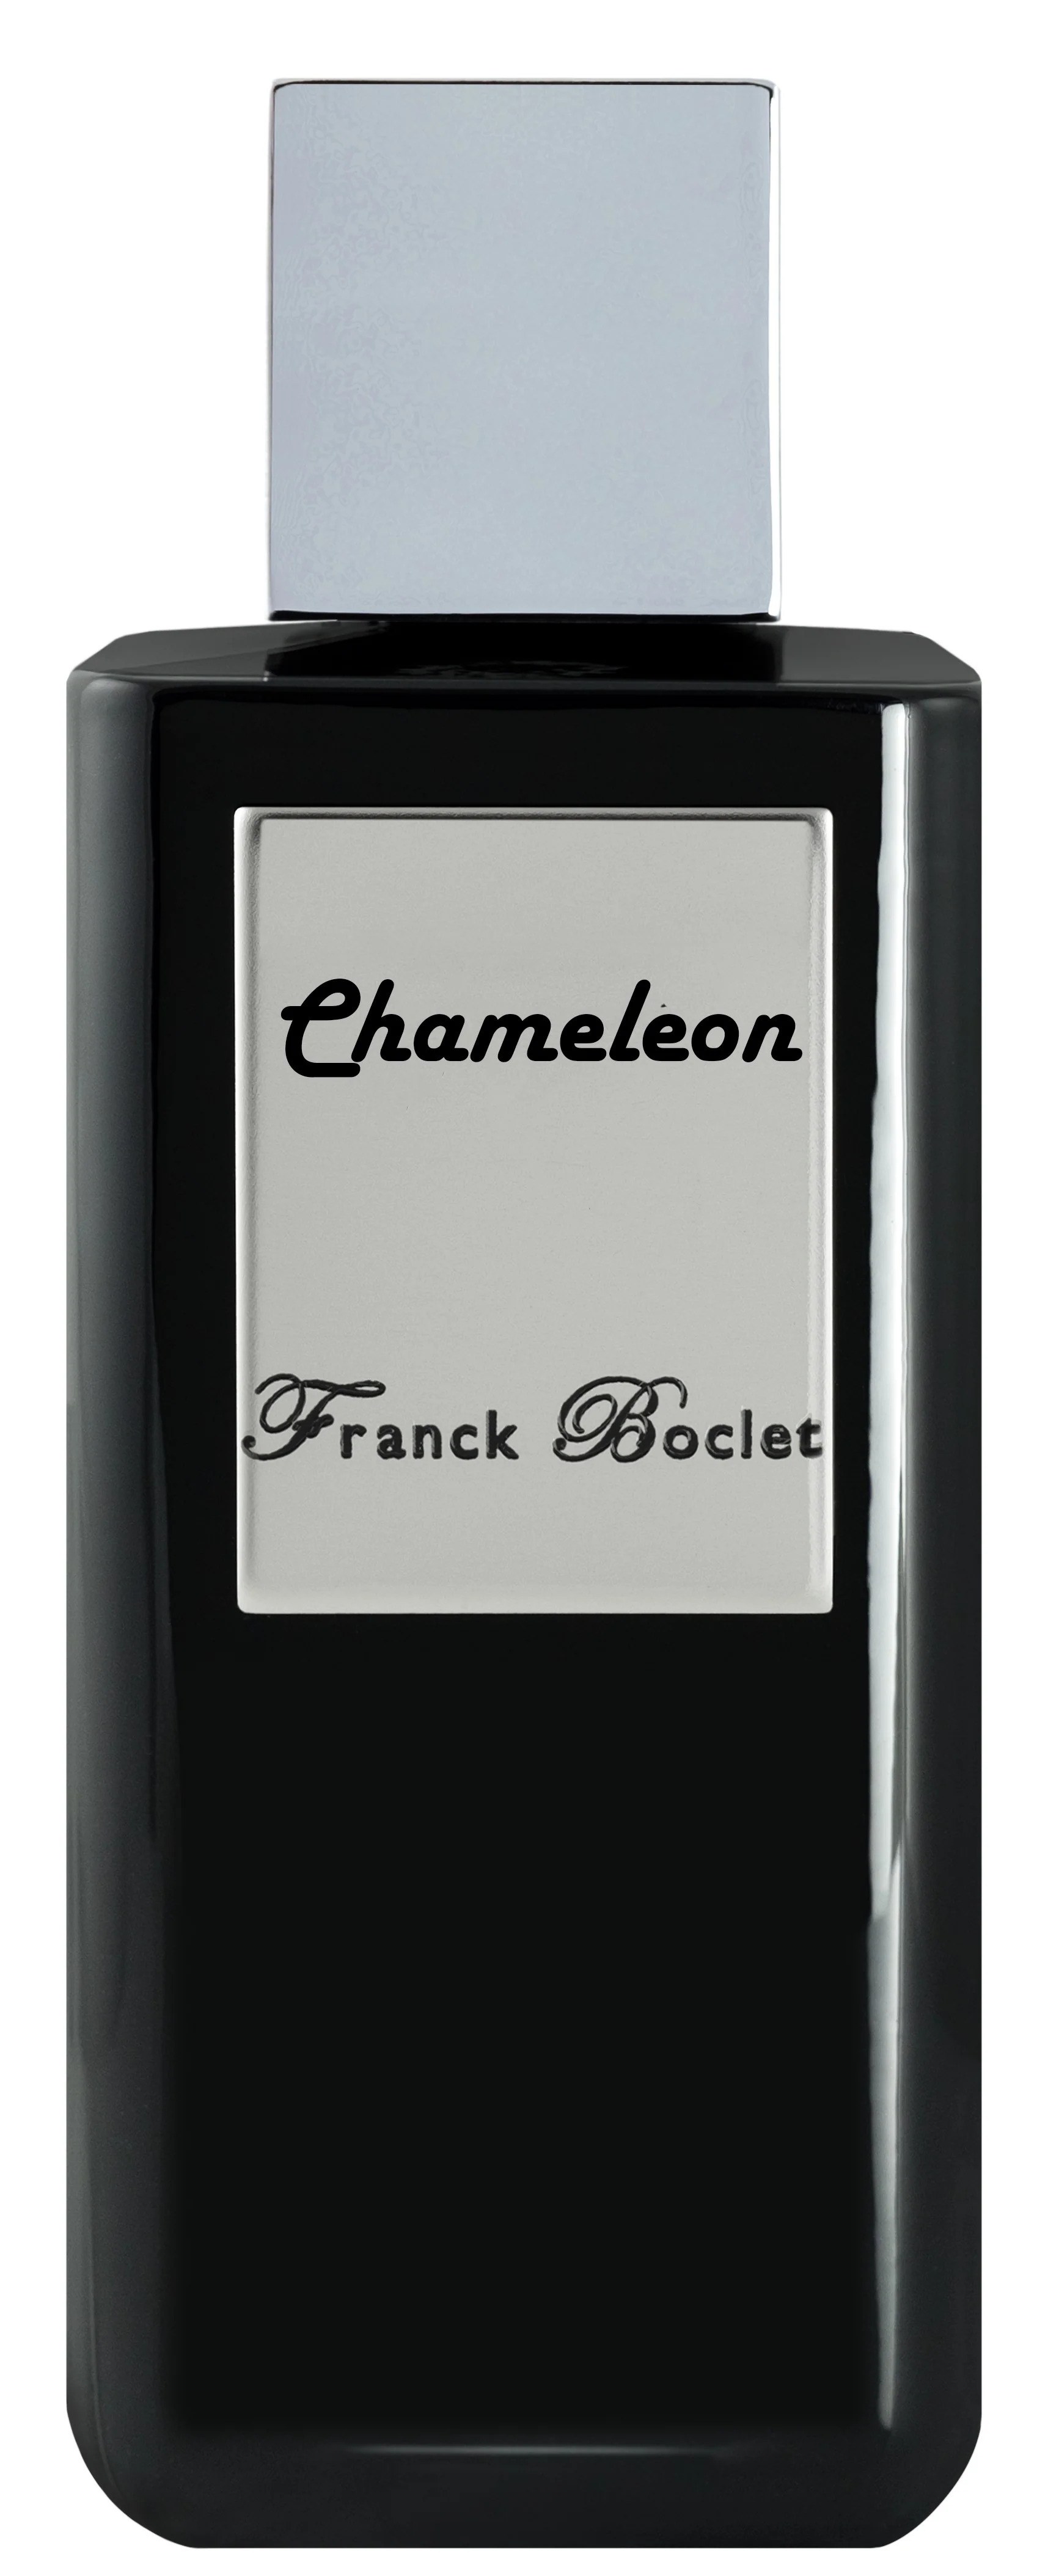 Парфюмерная вода Franck Boclet Chameleon, 100 мл как париж стал парижем история создания самого притягательного города в мире